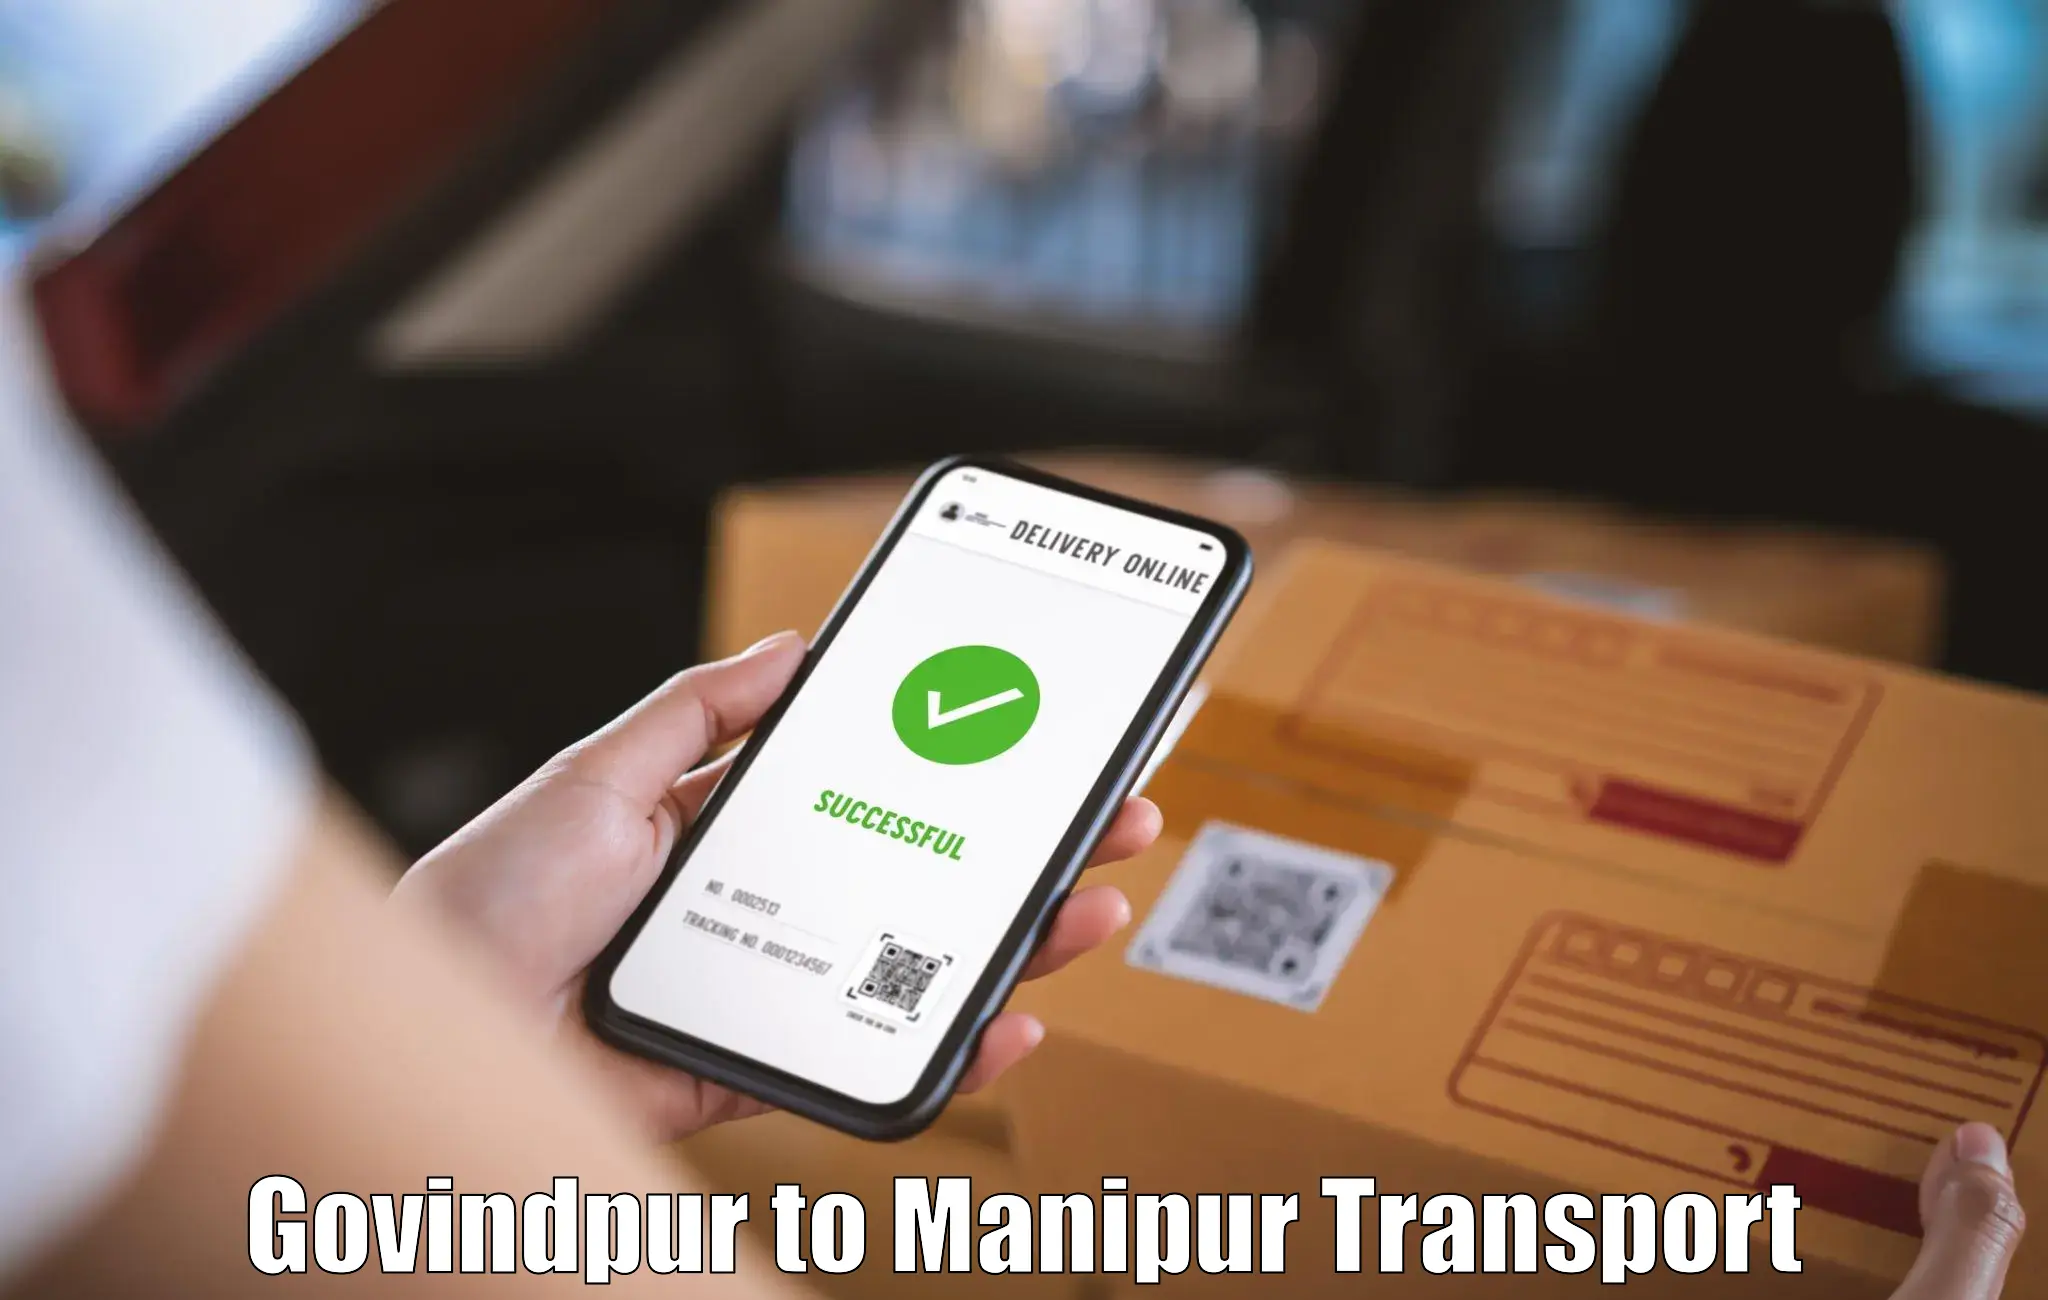 Nationwide transport services Govindpur to Churachandpur